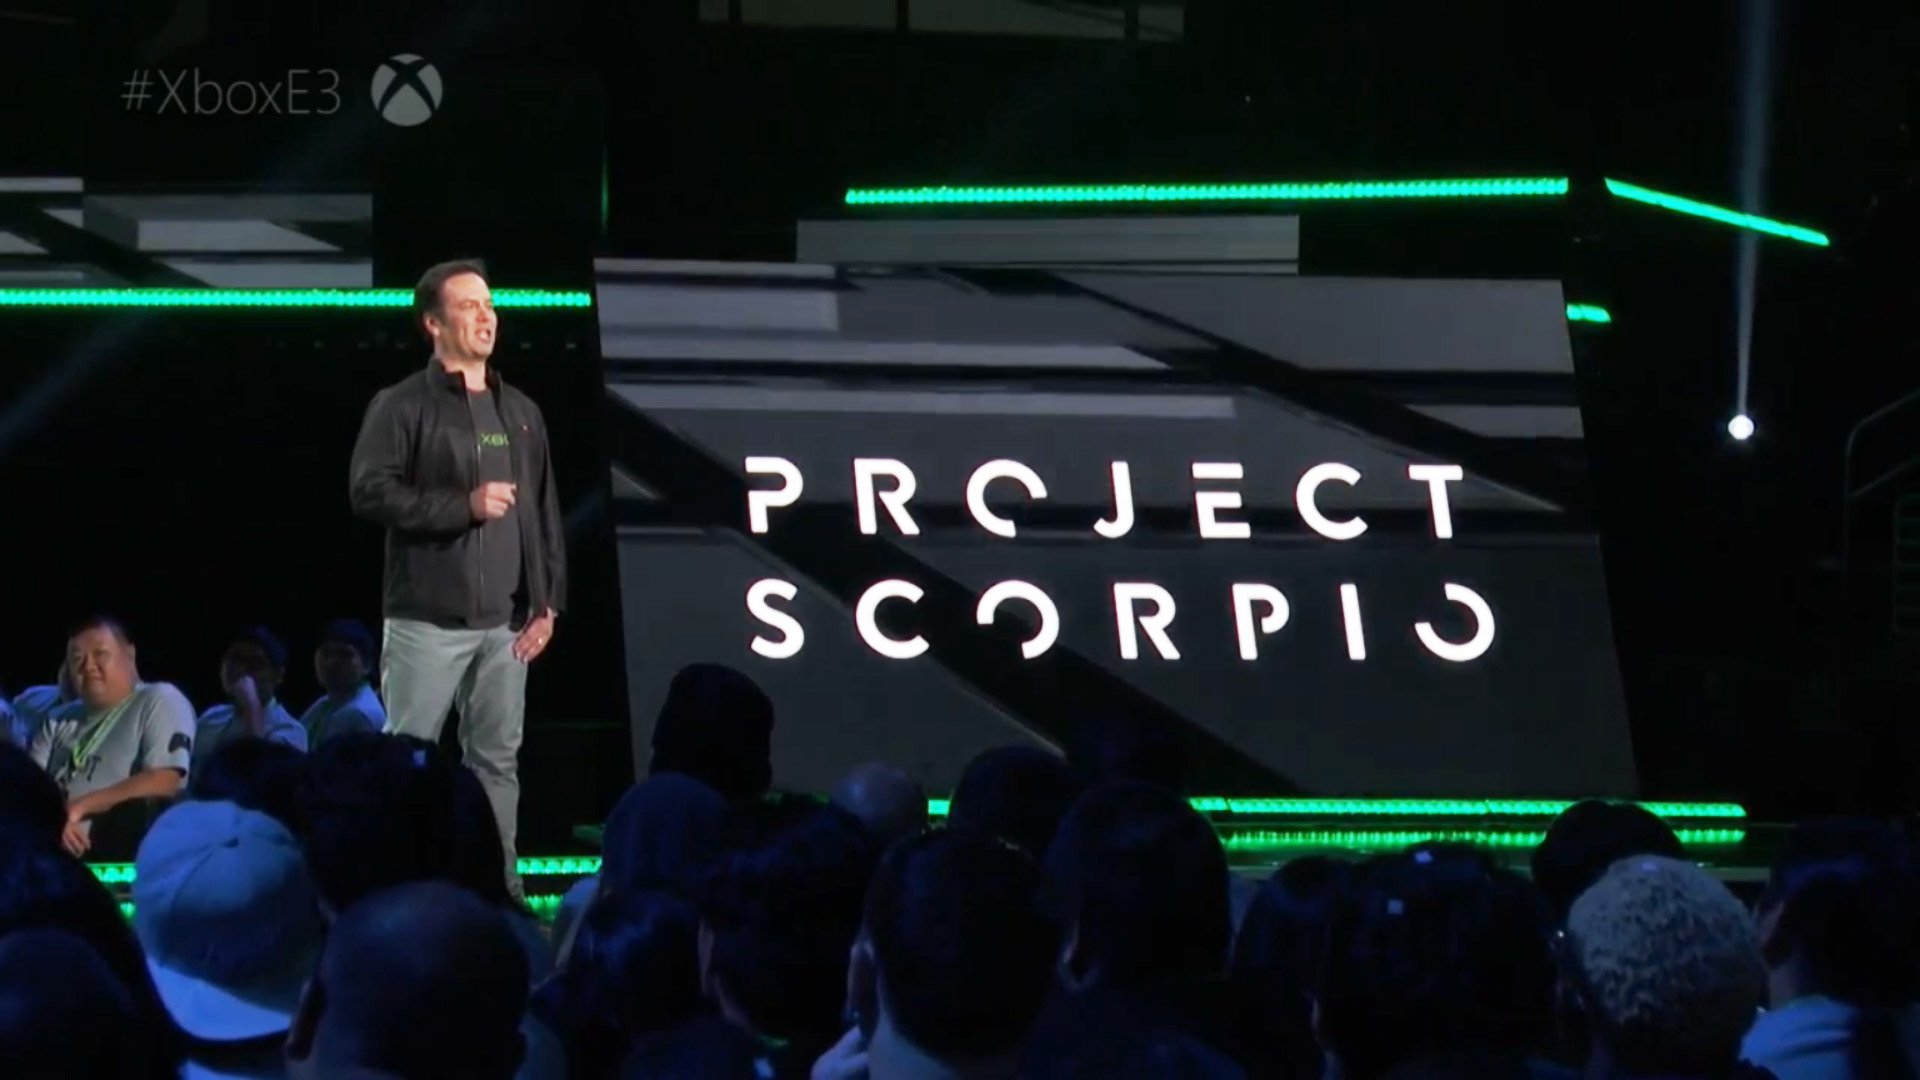 Anunciado na E3 anterior como Project Scorpio, o Xbox One X chegou em lançamento mundial.